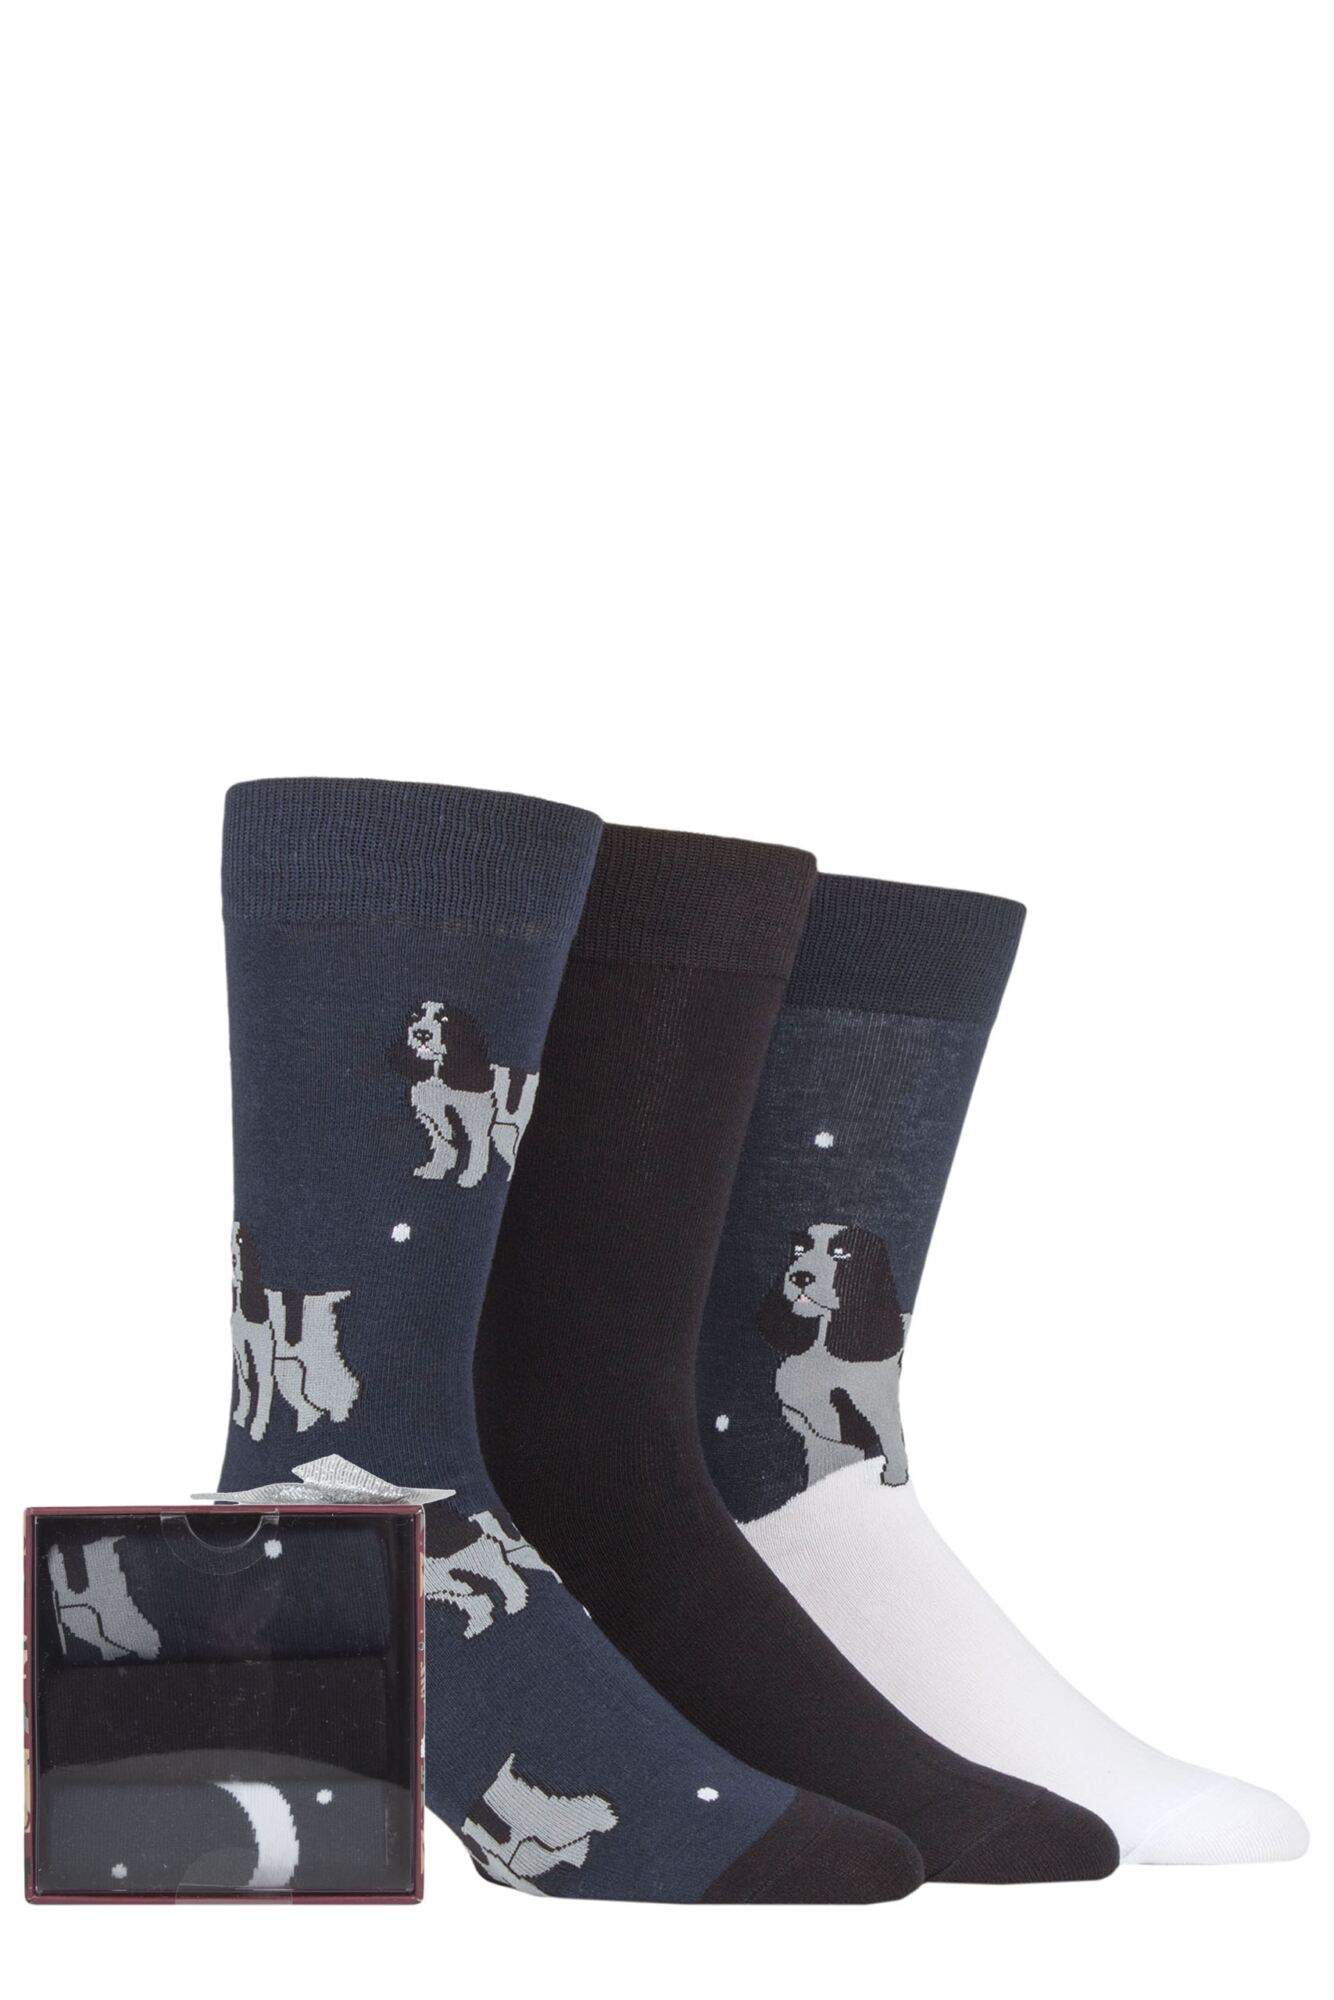 Mens 3 Pair SOCKSHOP Wild Feet Dogs Gift Boxed Socks